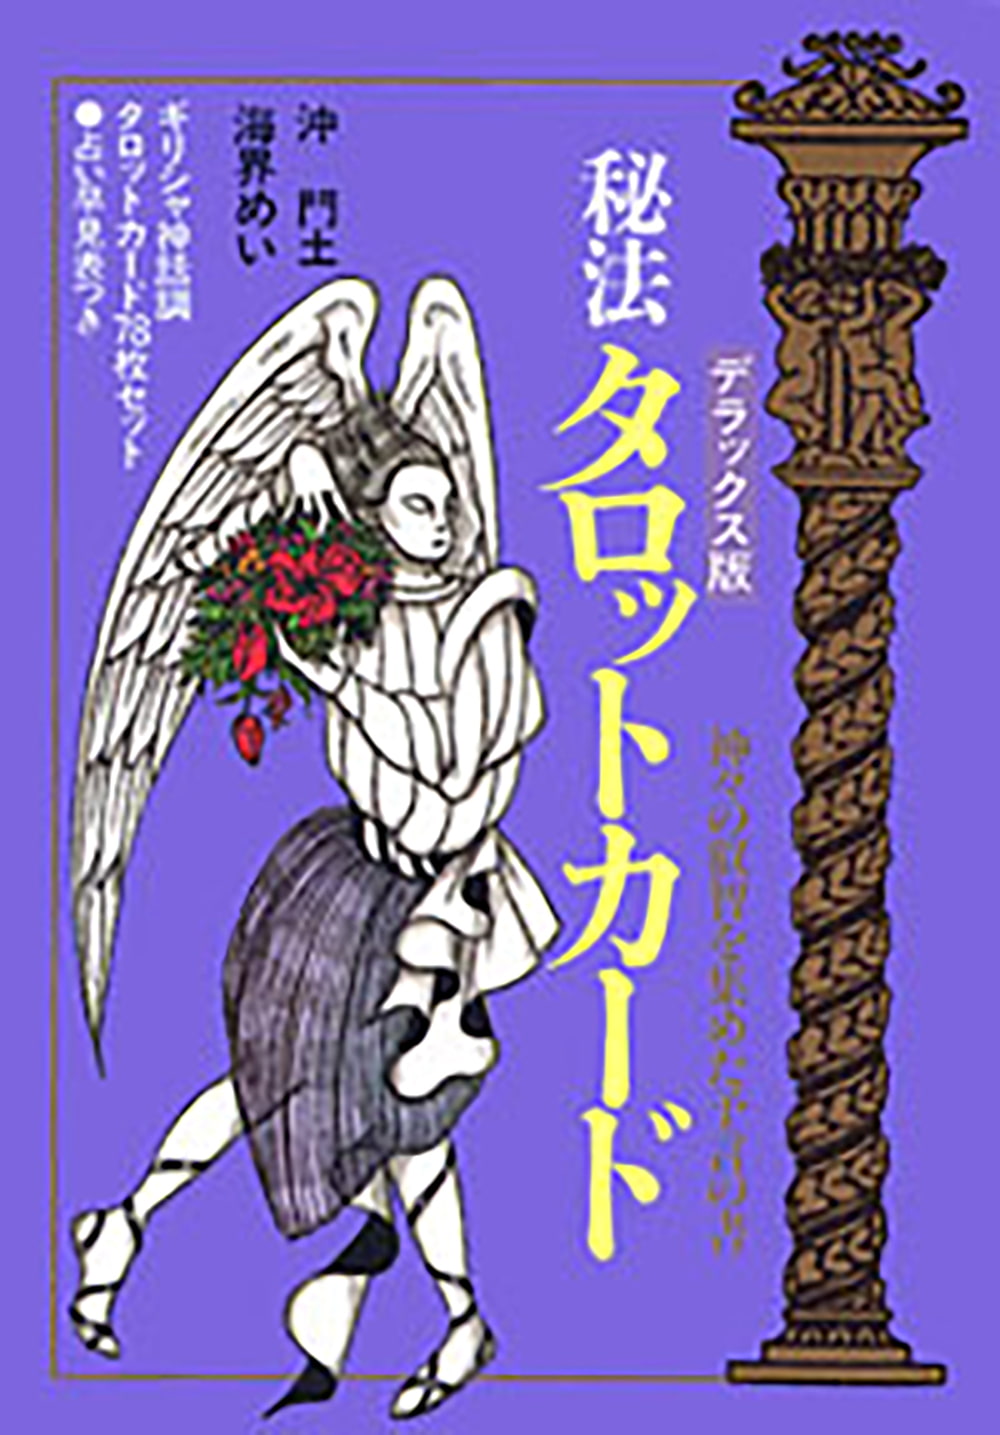 デラックス版 秘法タロットカード Deluxe Edition Secret Tarot Card / オラクルカード 占い カード占い 実業之日本社 ルノルマン コー